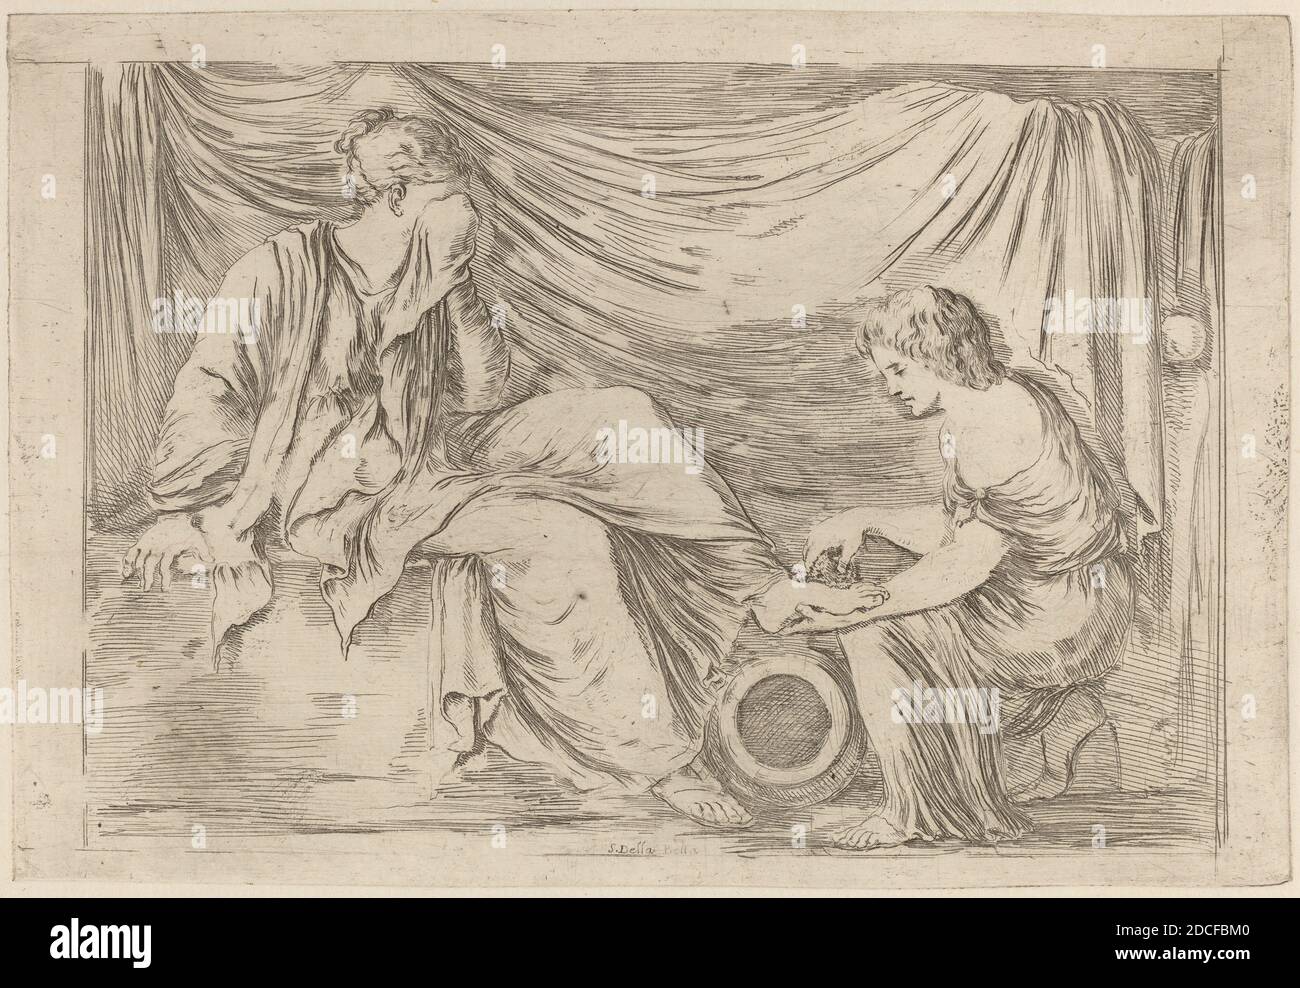 Stefano della Bella, (artista), fiorentino, 1610 - 1664, le Toilette di una sposa, Quadreria Medicea, vol.3 (1986.50.11-108), (serie), incisione su carta deposte Foto Stock